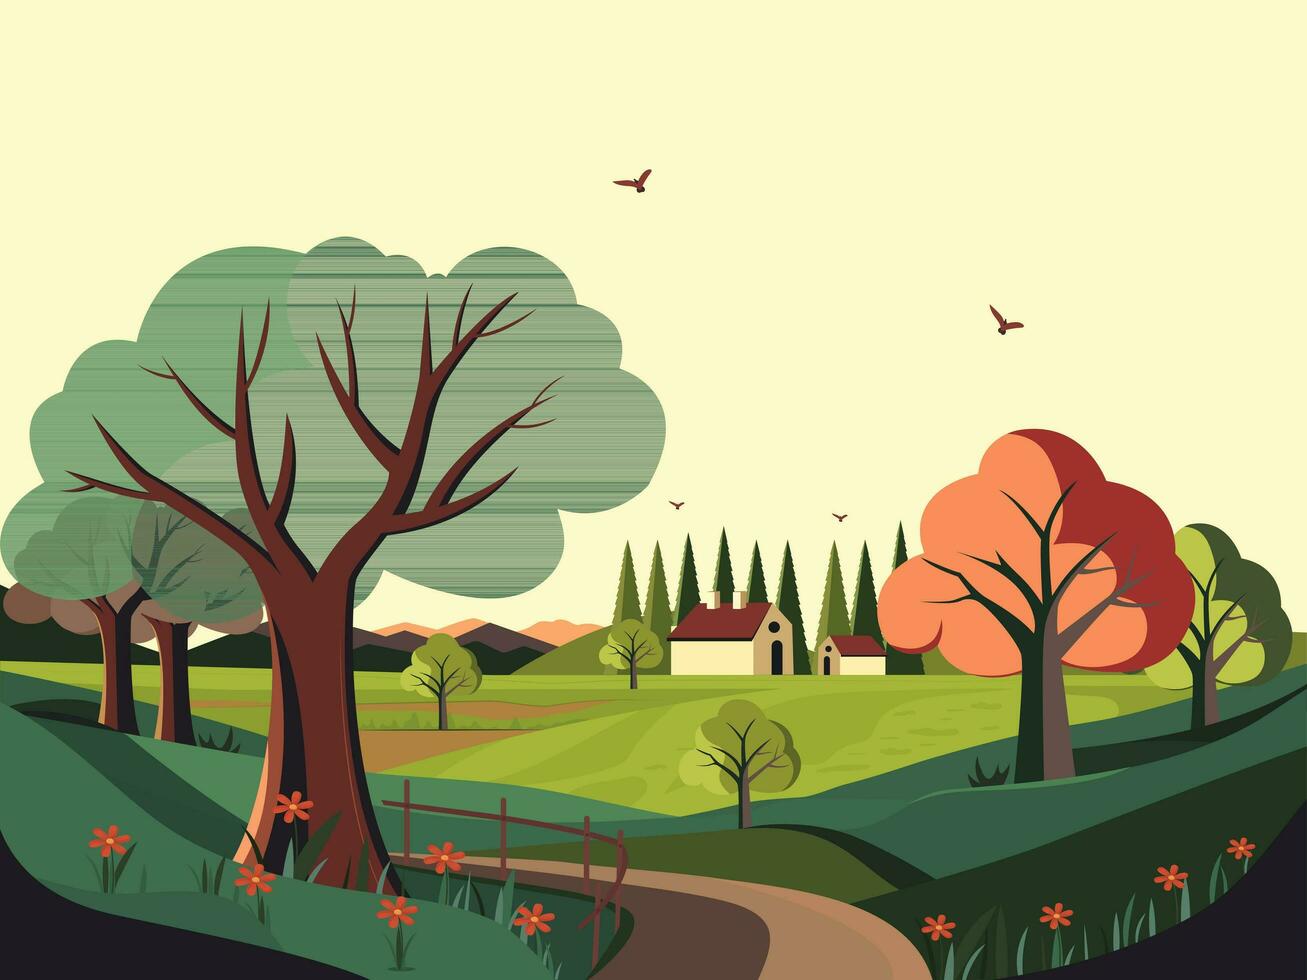 natuur landschap achtergrond met bergen, bomen, pad, vliegend vogelstand en huisje illustratie. vector